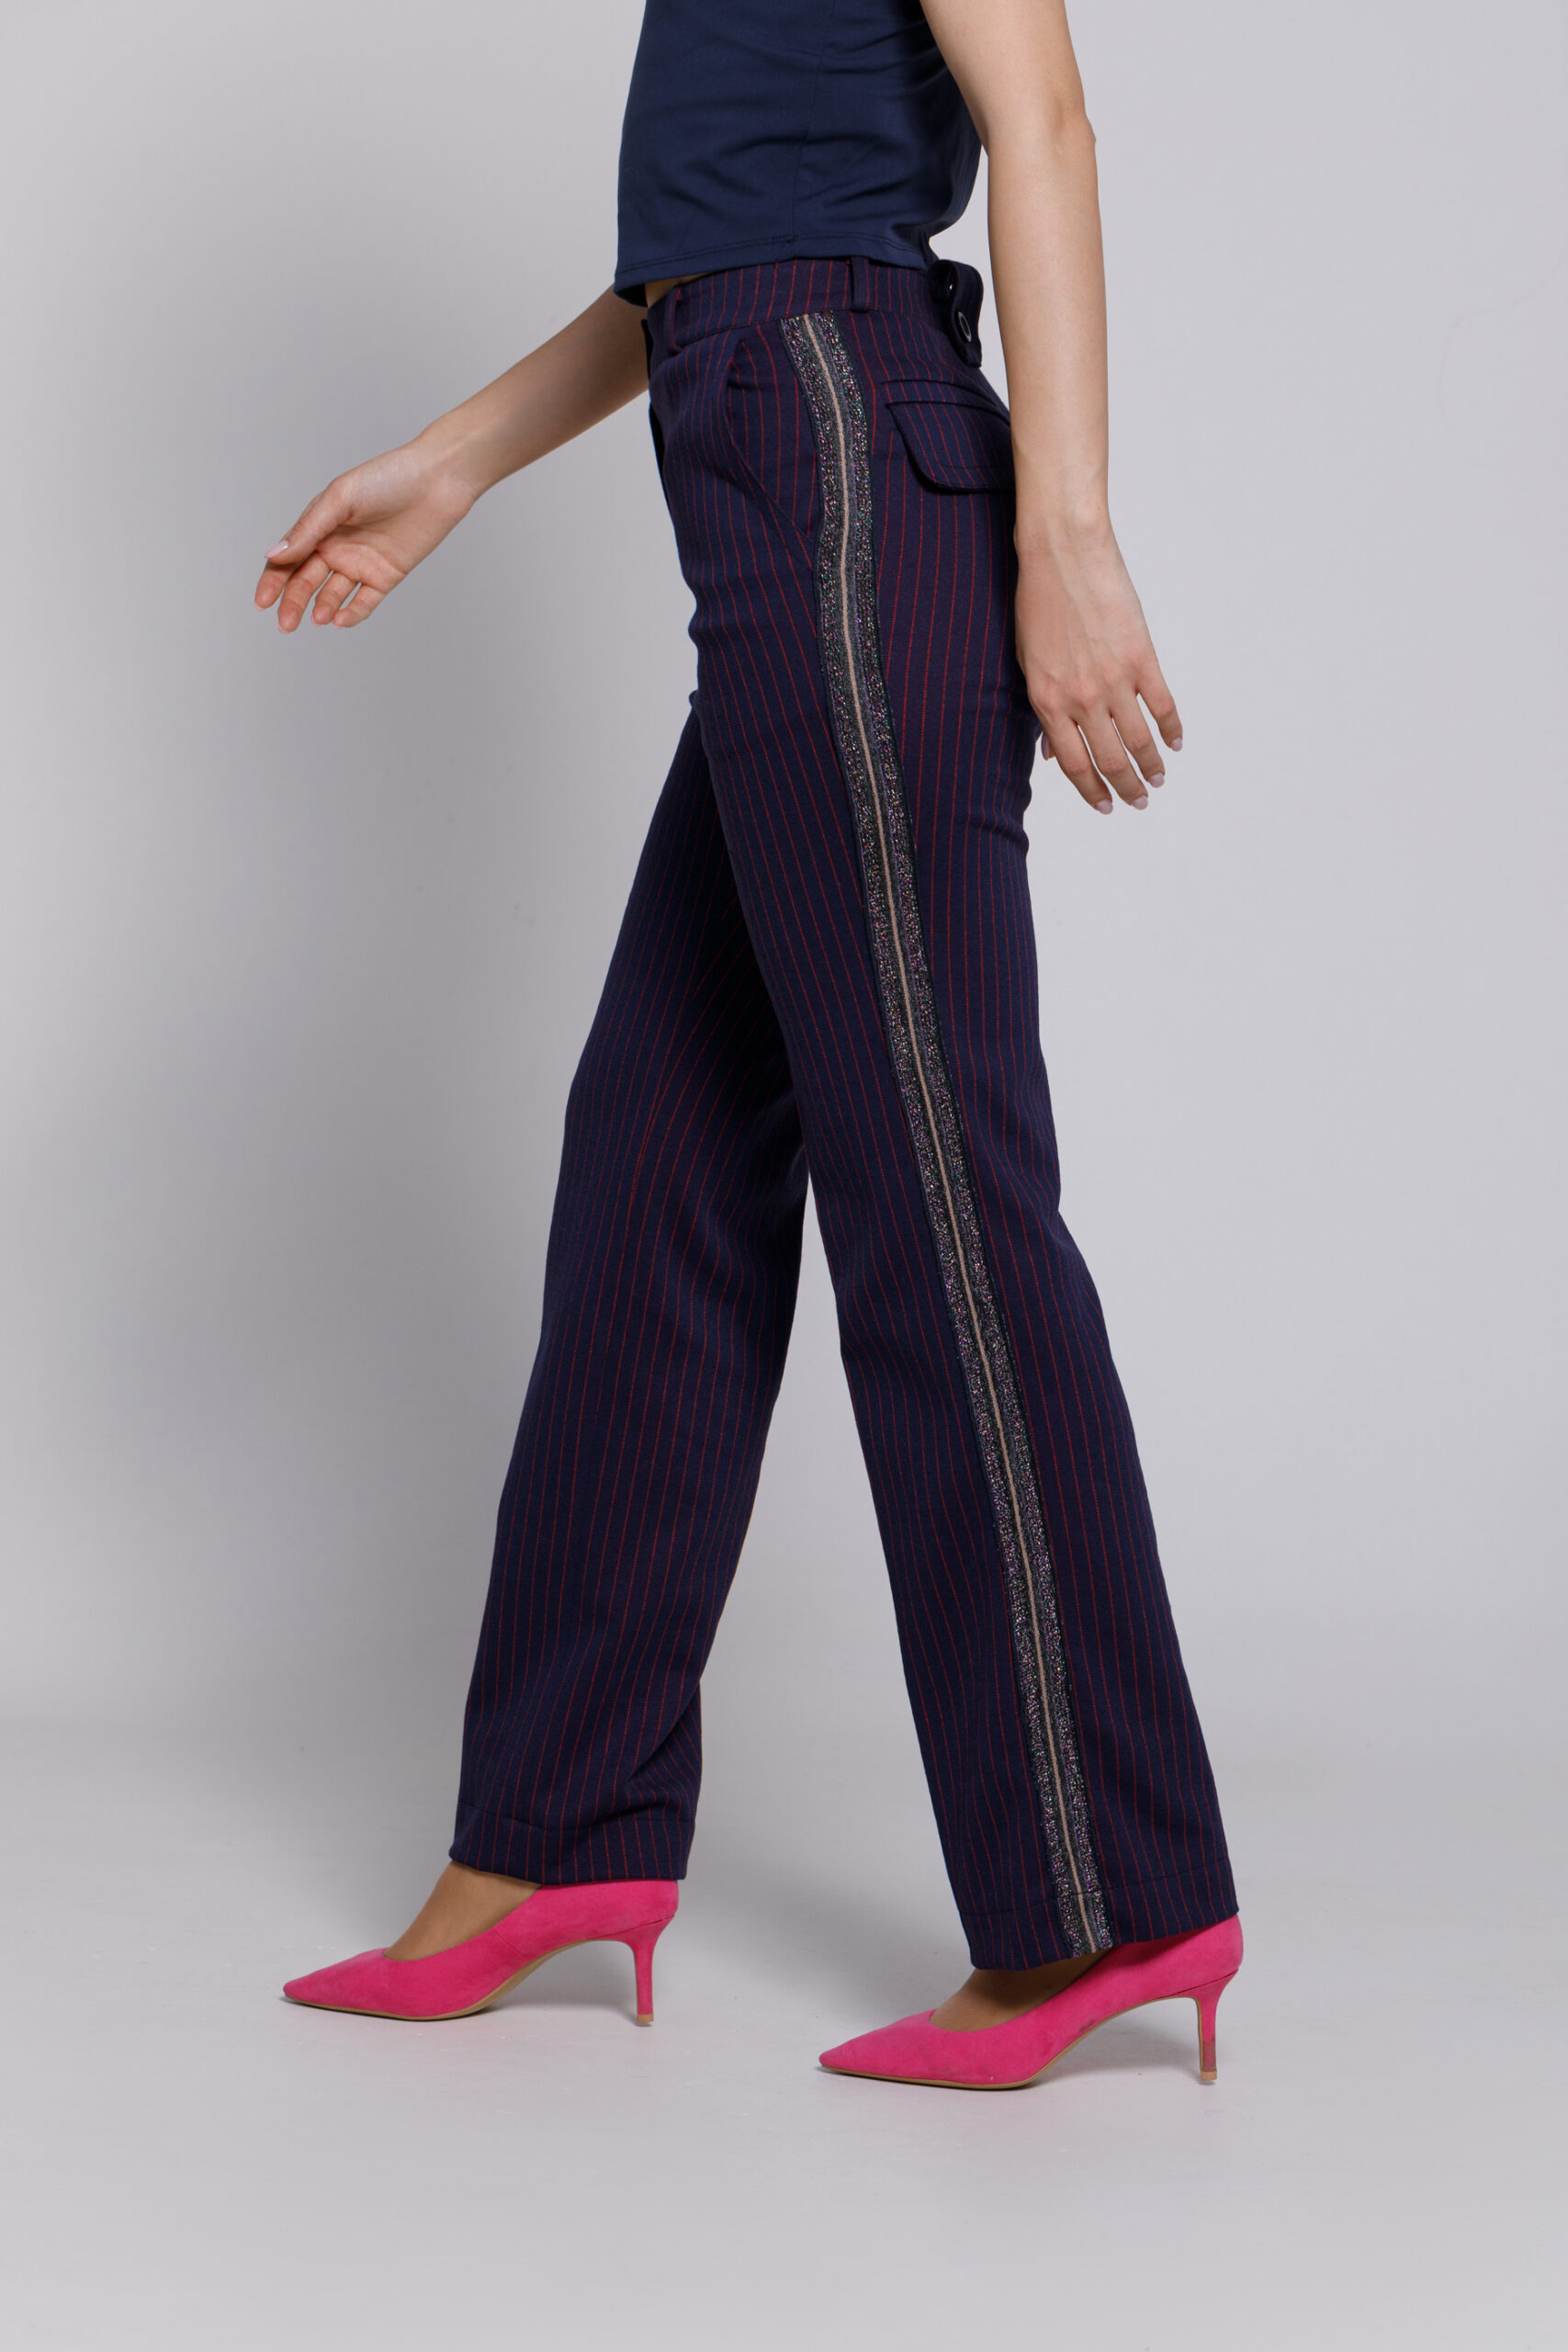 Pantalon GLADYS bleumarin cu dungi rosii. Materiale naturale, design unicat, cu broderie si aplicatii handmade